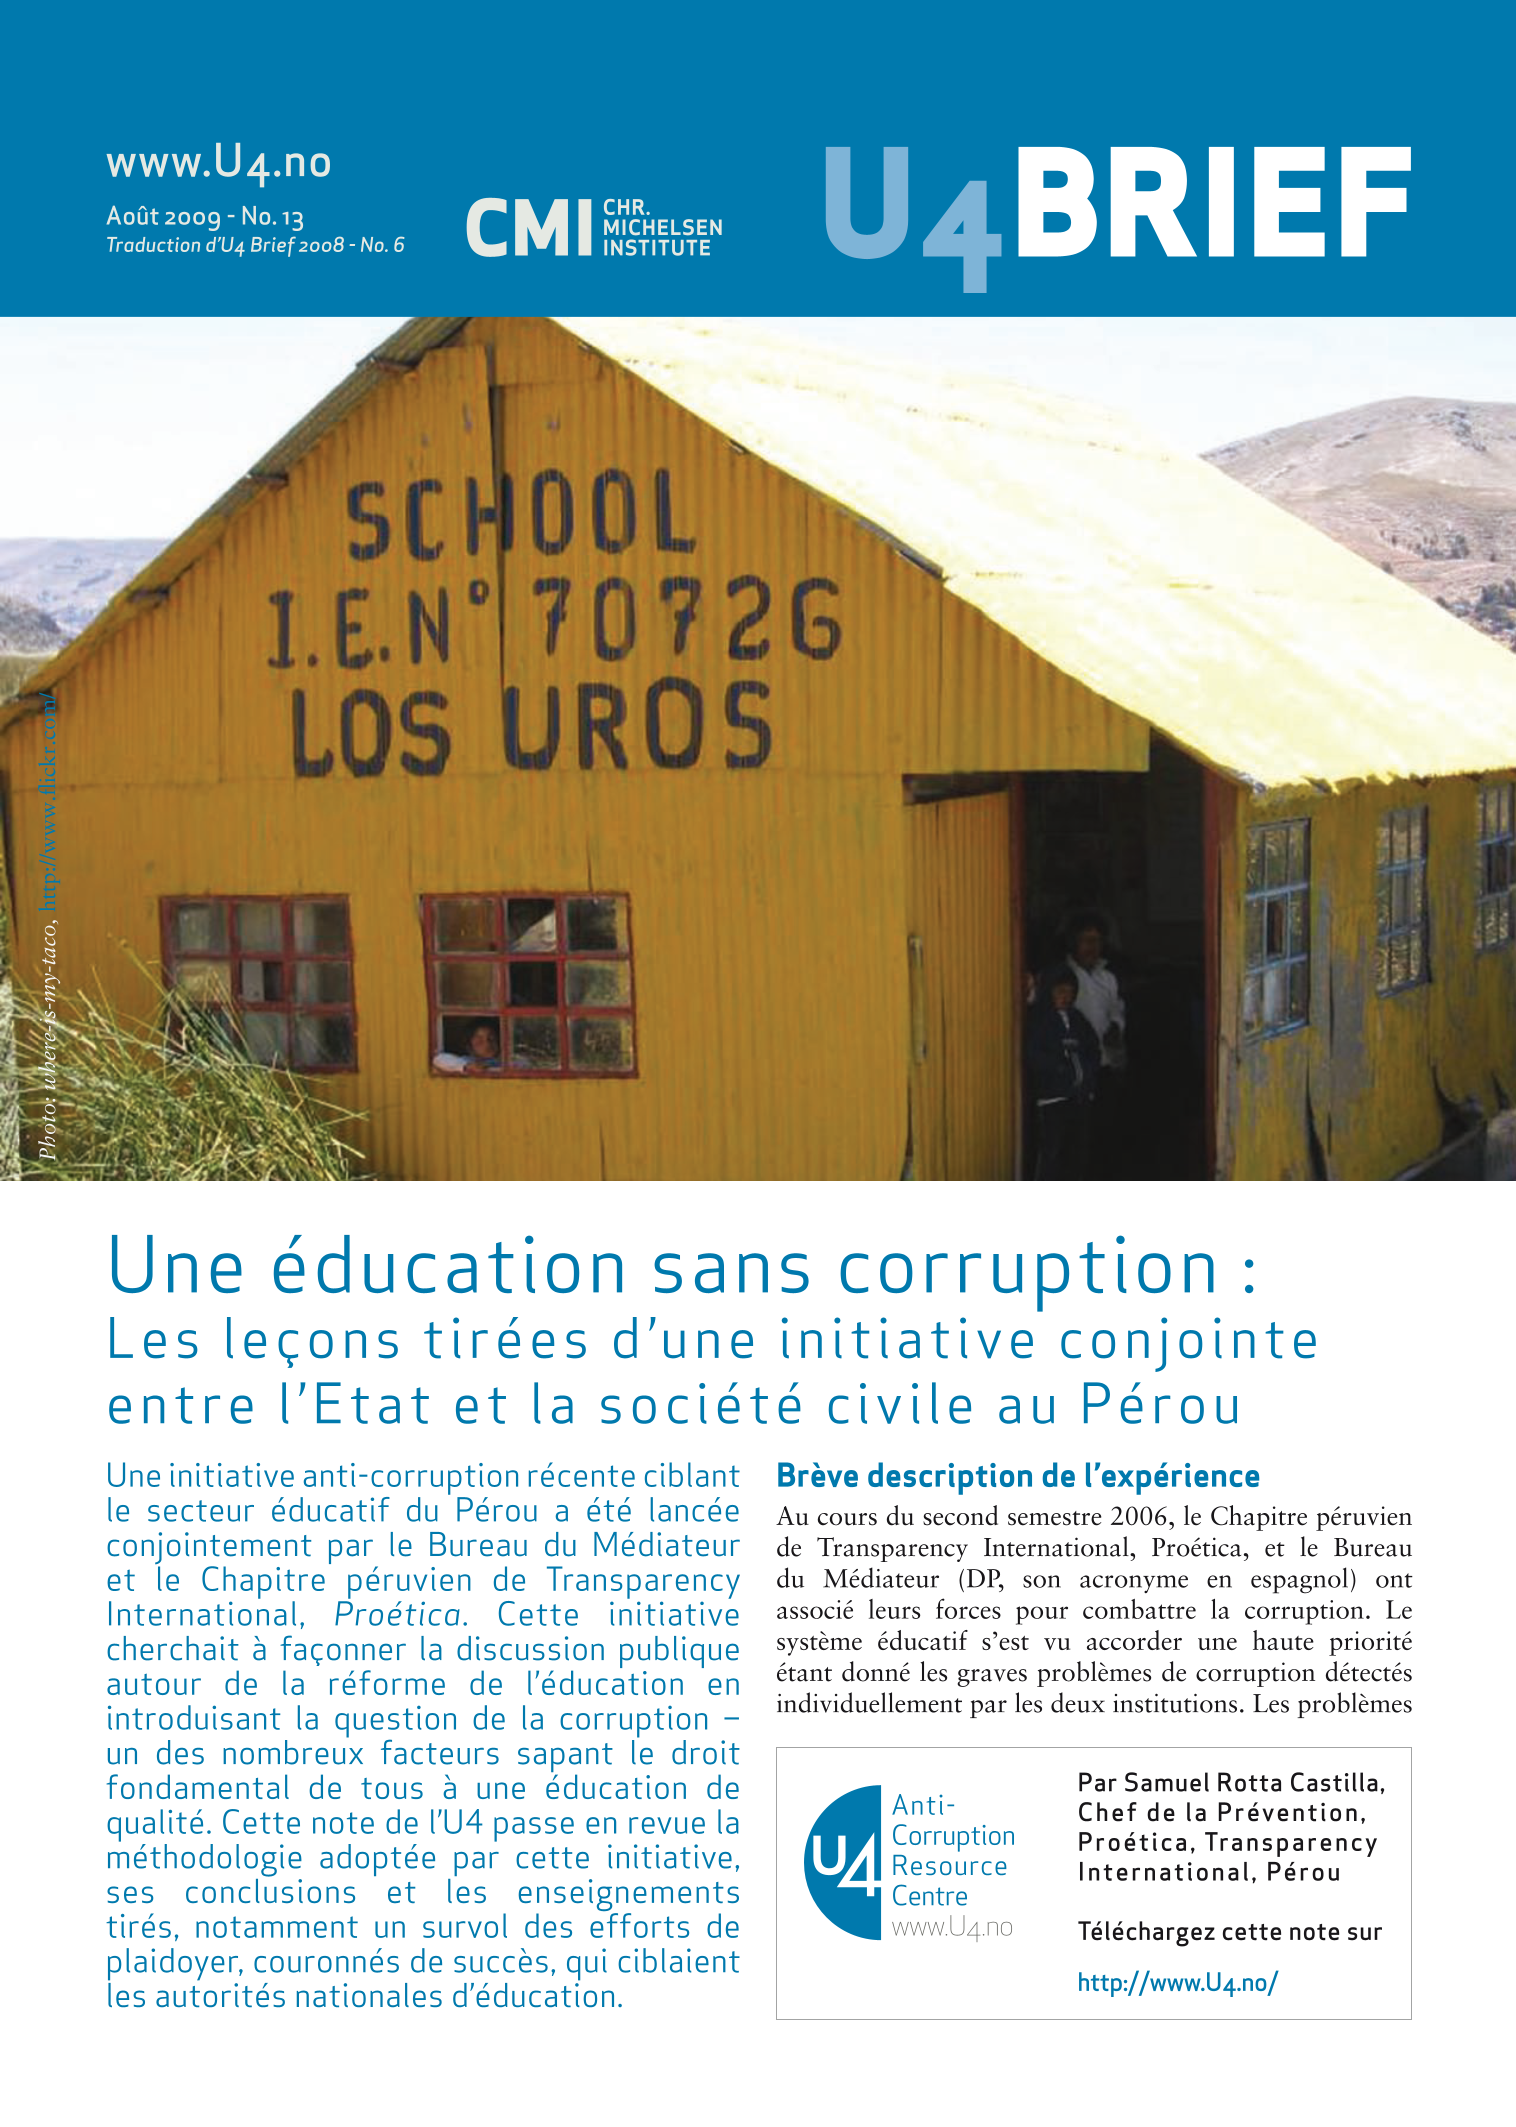 Une éducation sans corruption : Les leçons tirées d'une initiative conjointe entre l'Etat et la société civile au Pérou